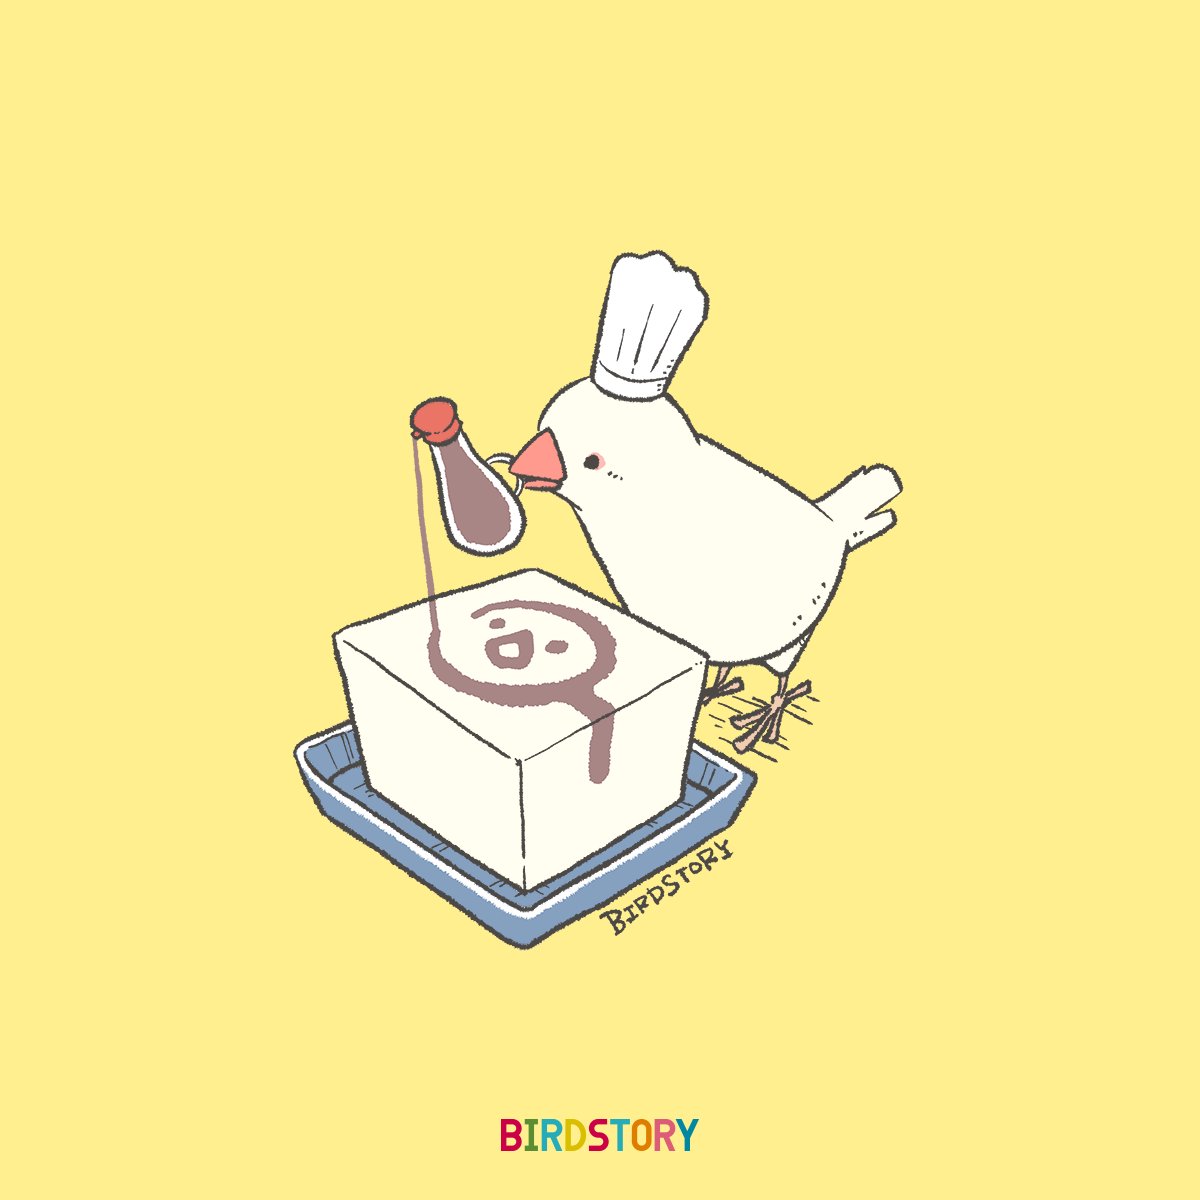 「おはようございます。
本日は10月2日、とうふの語呂合わせから豆腐の日とのことで」|BIRDSTORYのイラスト